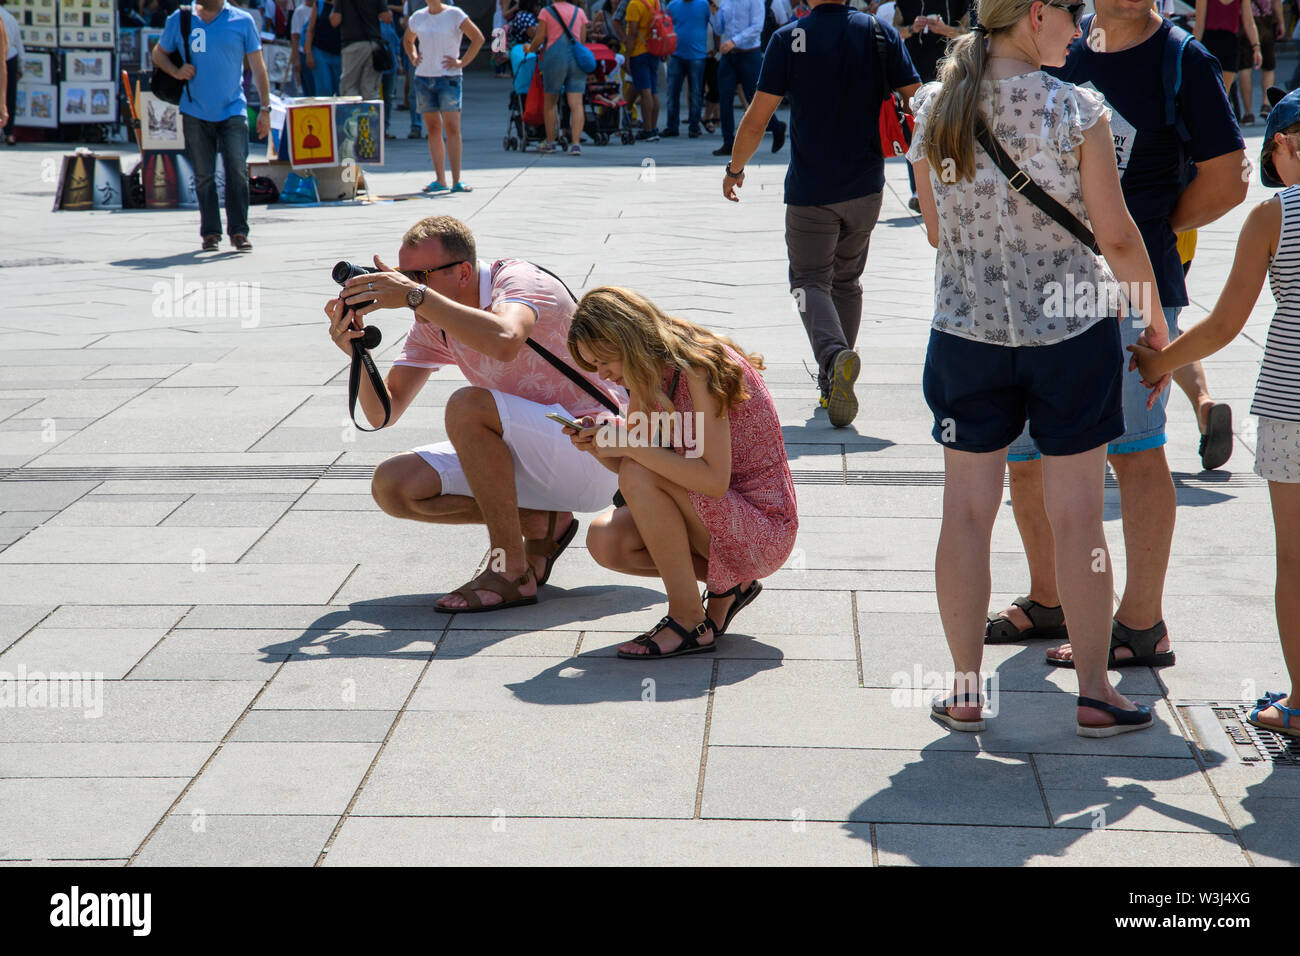 Vienne, Autriche - 19 août 2018 : Malgré la chaleur anormale les touristes sont activement photographiée sur la place centrale de Vienne. Banque D'Images